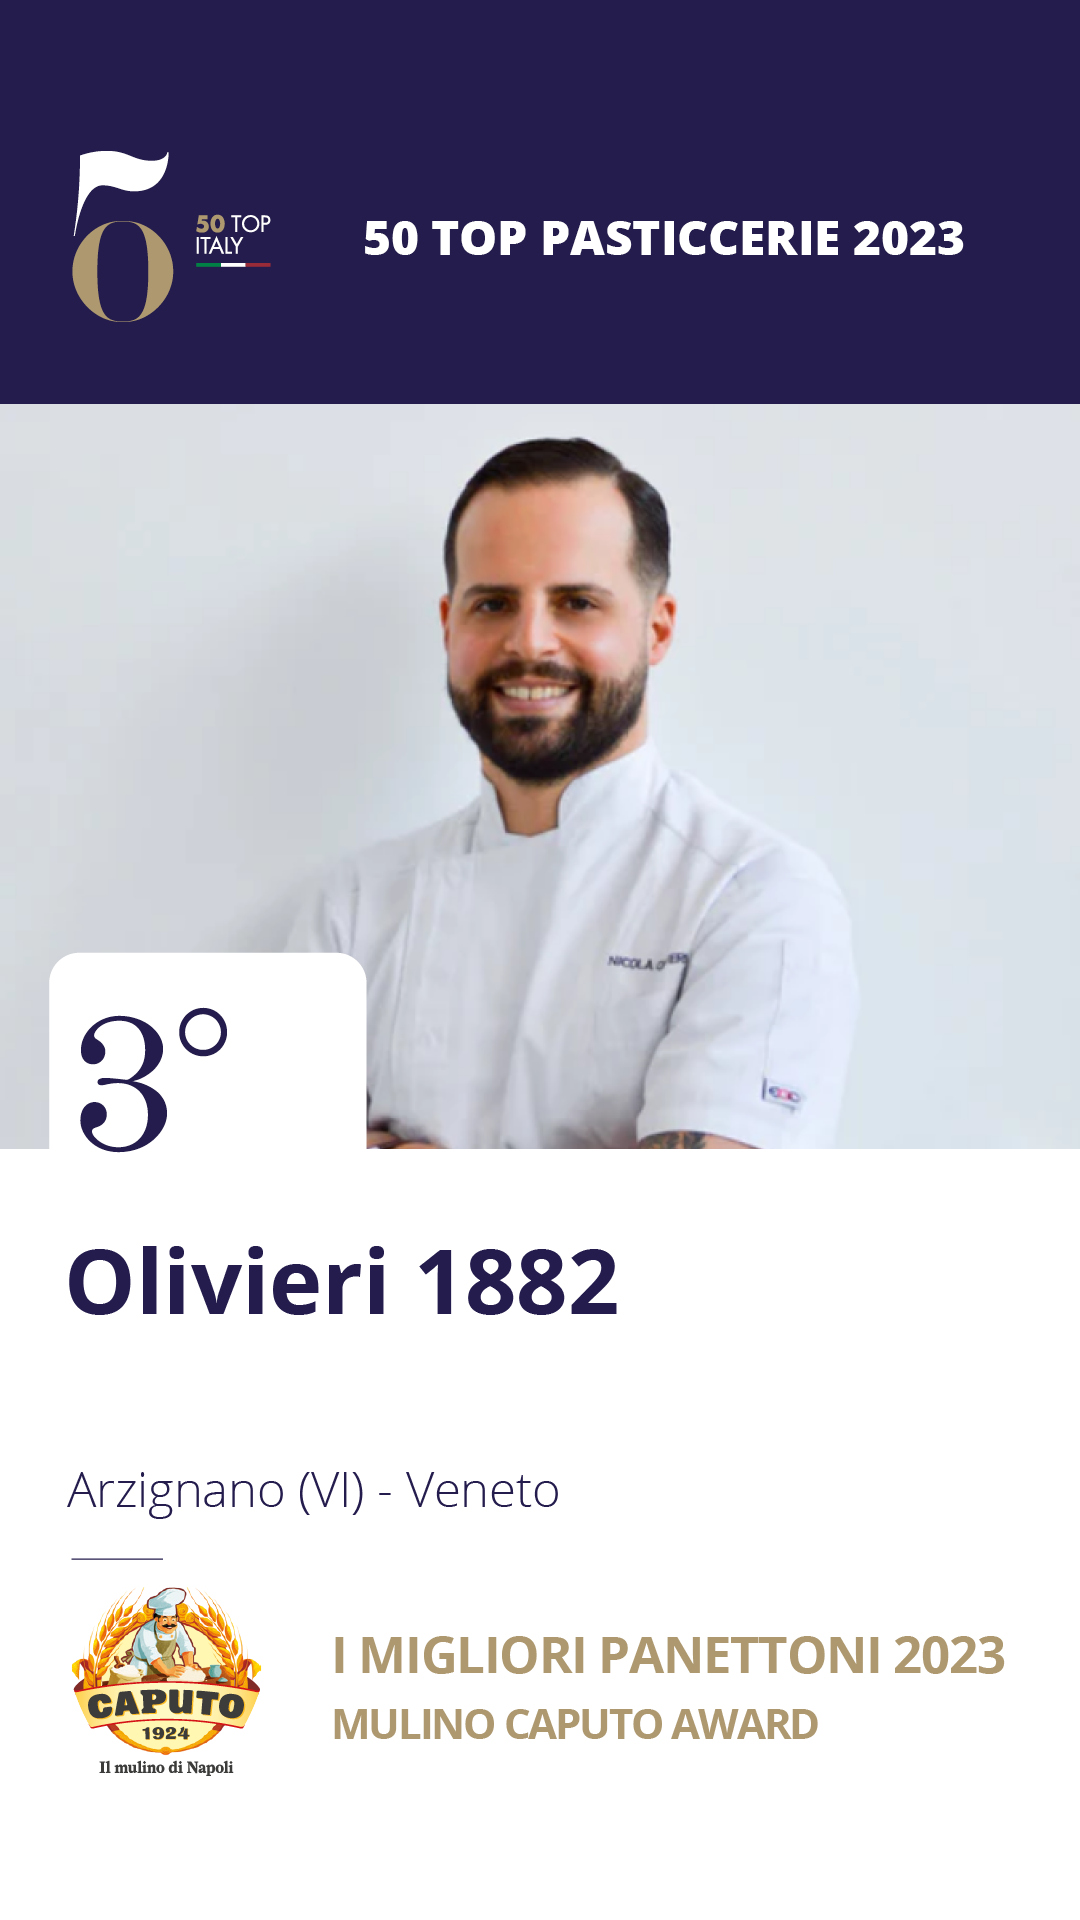 3 - Olivieri 1882 - Arzignano (VI), Veneto